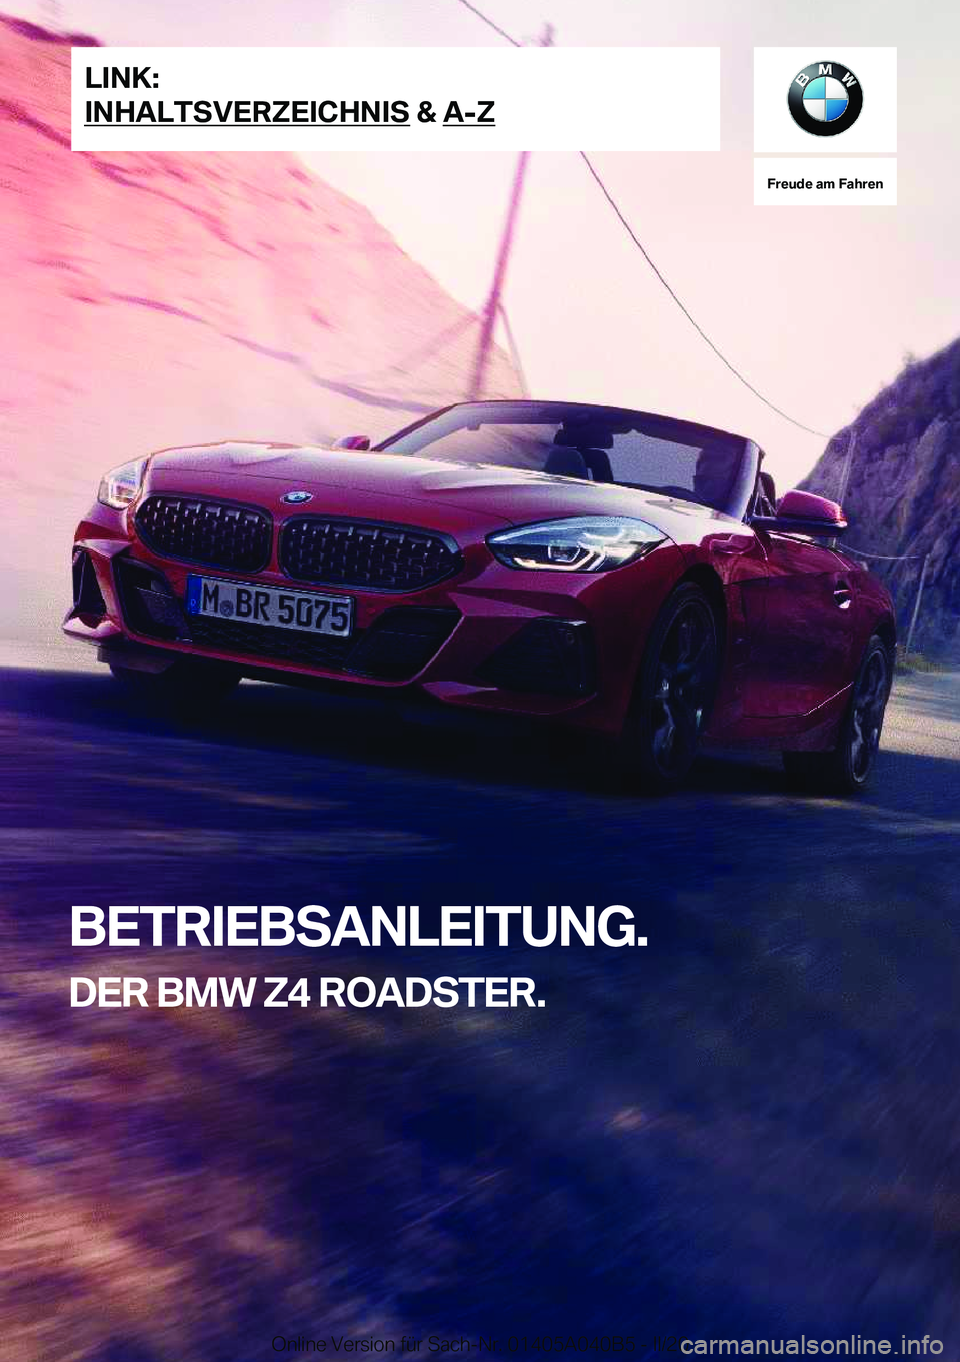 BMW Z4 2020  Betriebsanleitungen (in German) �F�r�e�u�d�e��a�m��F�a�h�r�e�n
�B�E�T�R�I�E�B�S�A�N�L�E�I�T�U�N�G�.�D�E�R��B�M�W��Z�4��R�O�A�D�S�T�E�R�.�L�I�N�K�:
�I�N�H�A�L�T�S�V�E�R�Z�E�I�C�H�N�I�S��&��A�-�Z�O�n�l�i�n�e��V�e�r�s�i�o�n��f